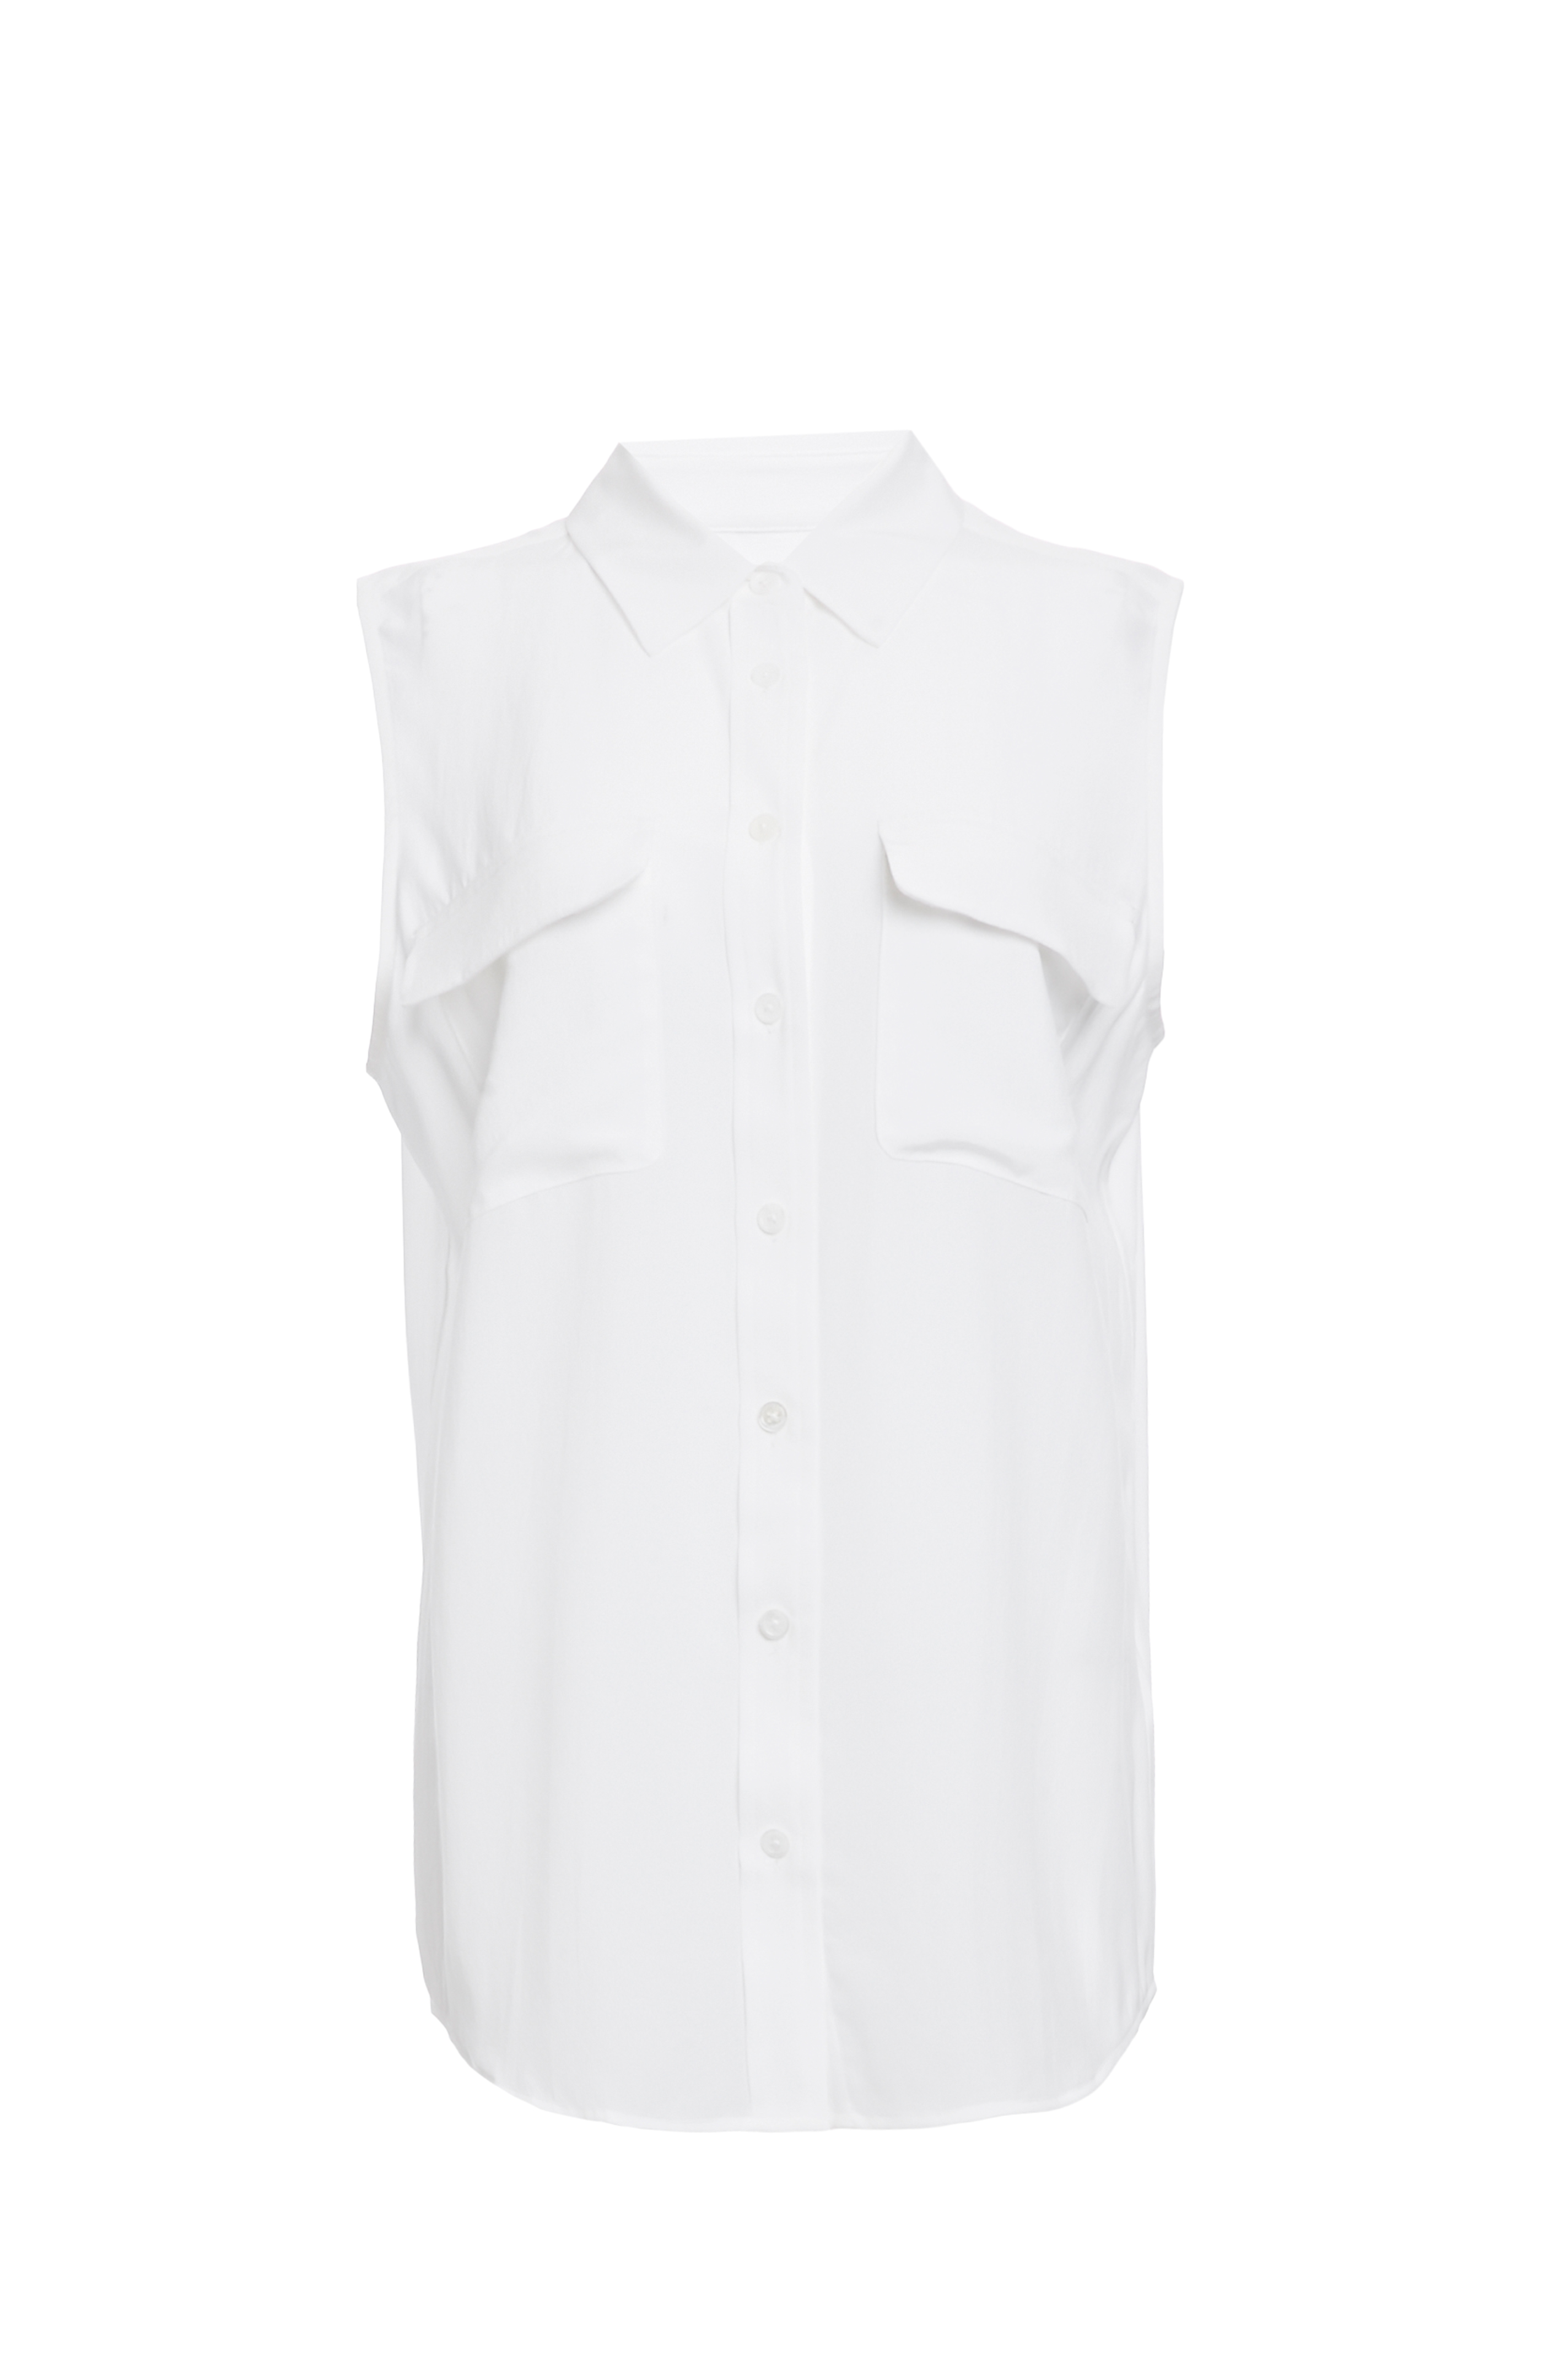 EQUIPMENT Sleeveless Signature Silk Shirt in White M | DAILYLOOK